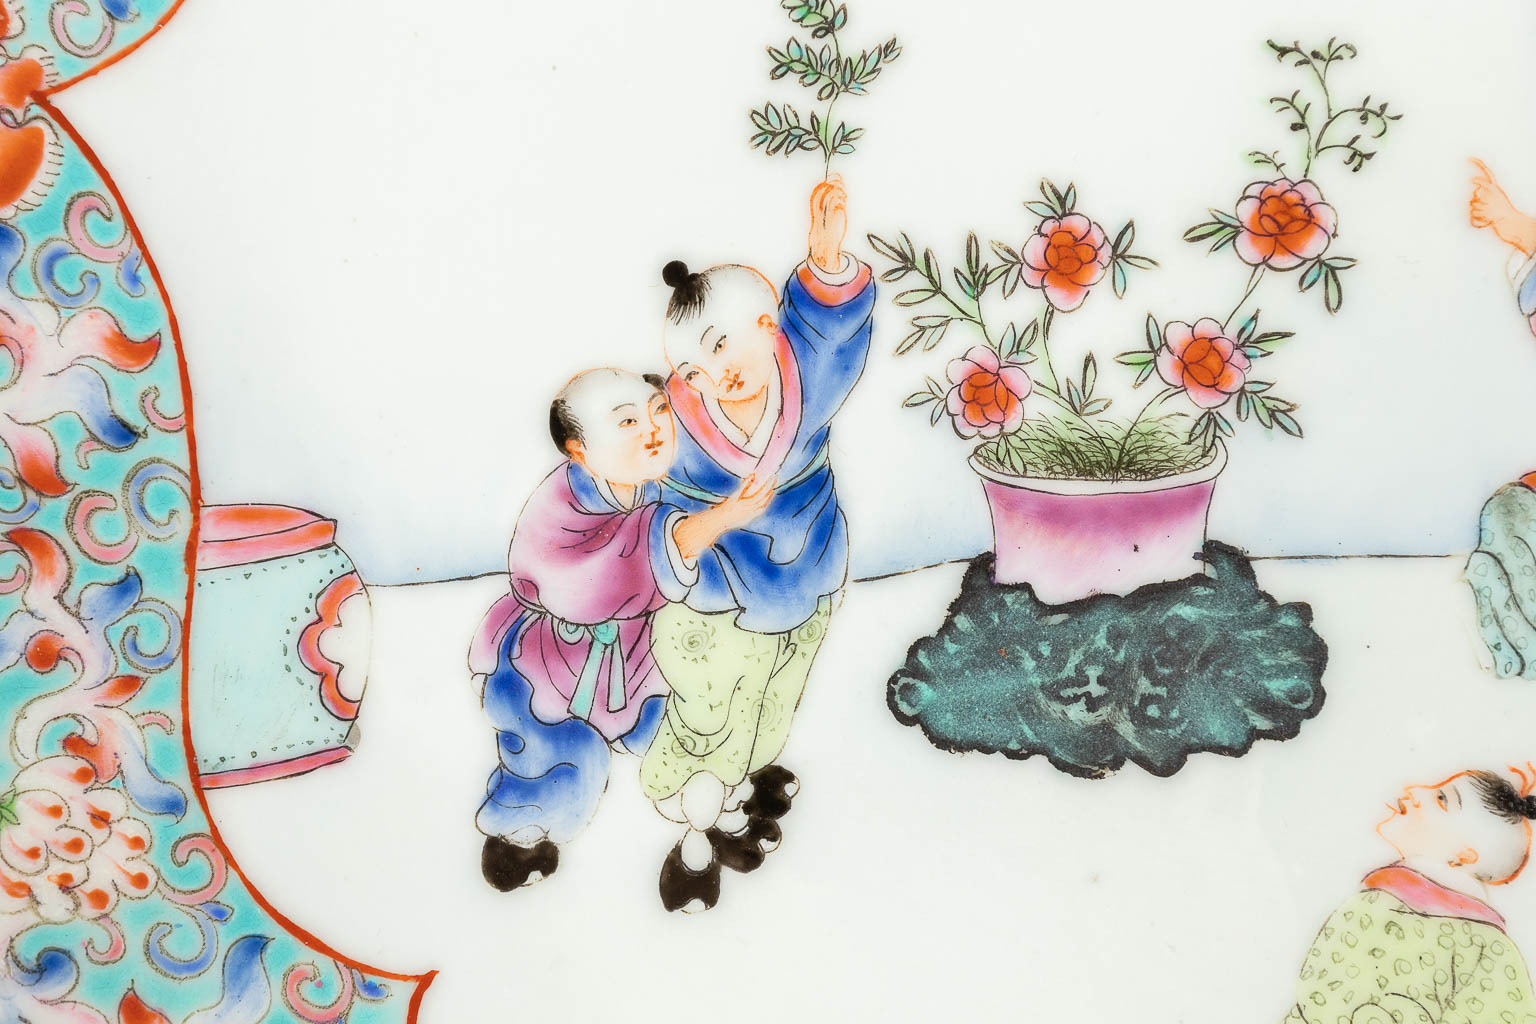 Een Chinees porselein bord, versierd met spelende kinderen en een hofdame. 20ste eeuw. (D: 37,5 cm)